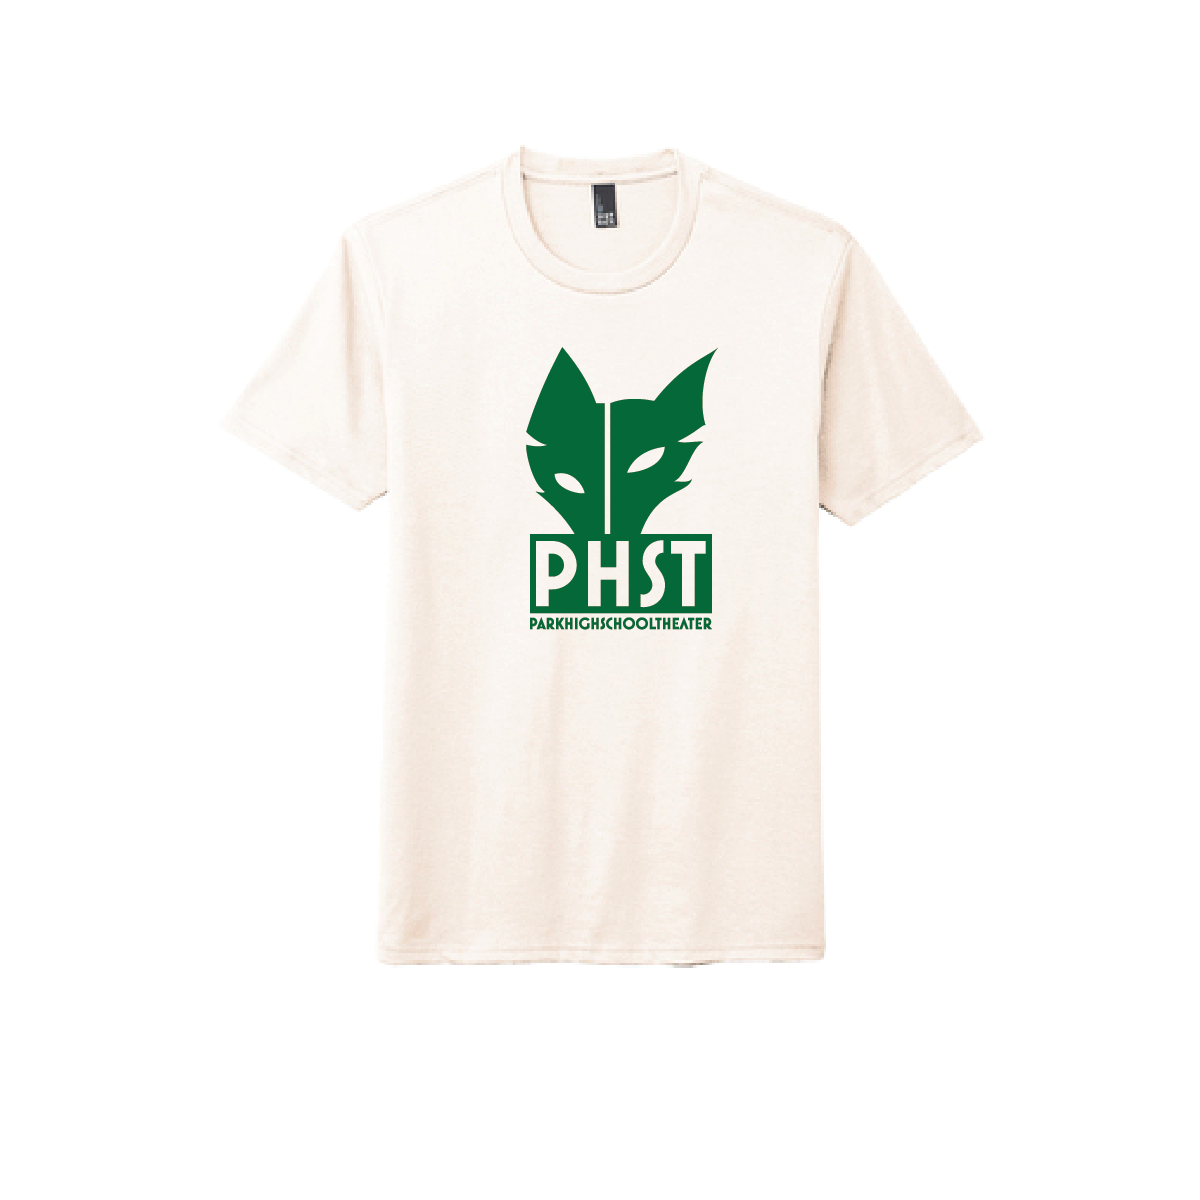 PHST Triblend Shirt